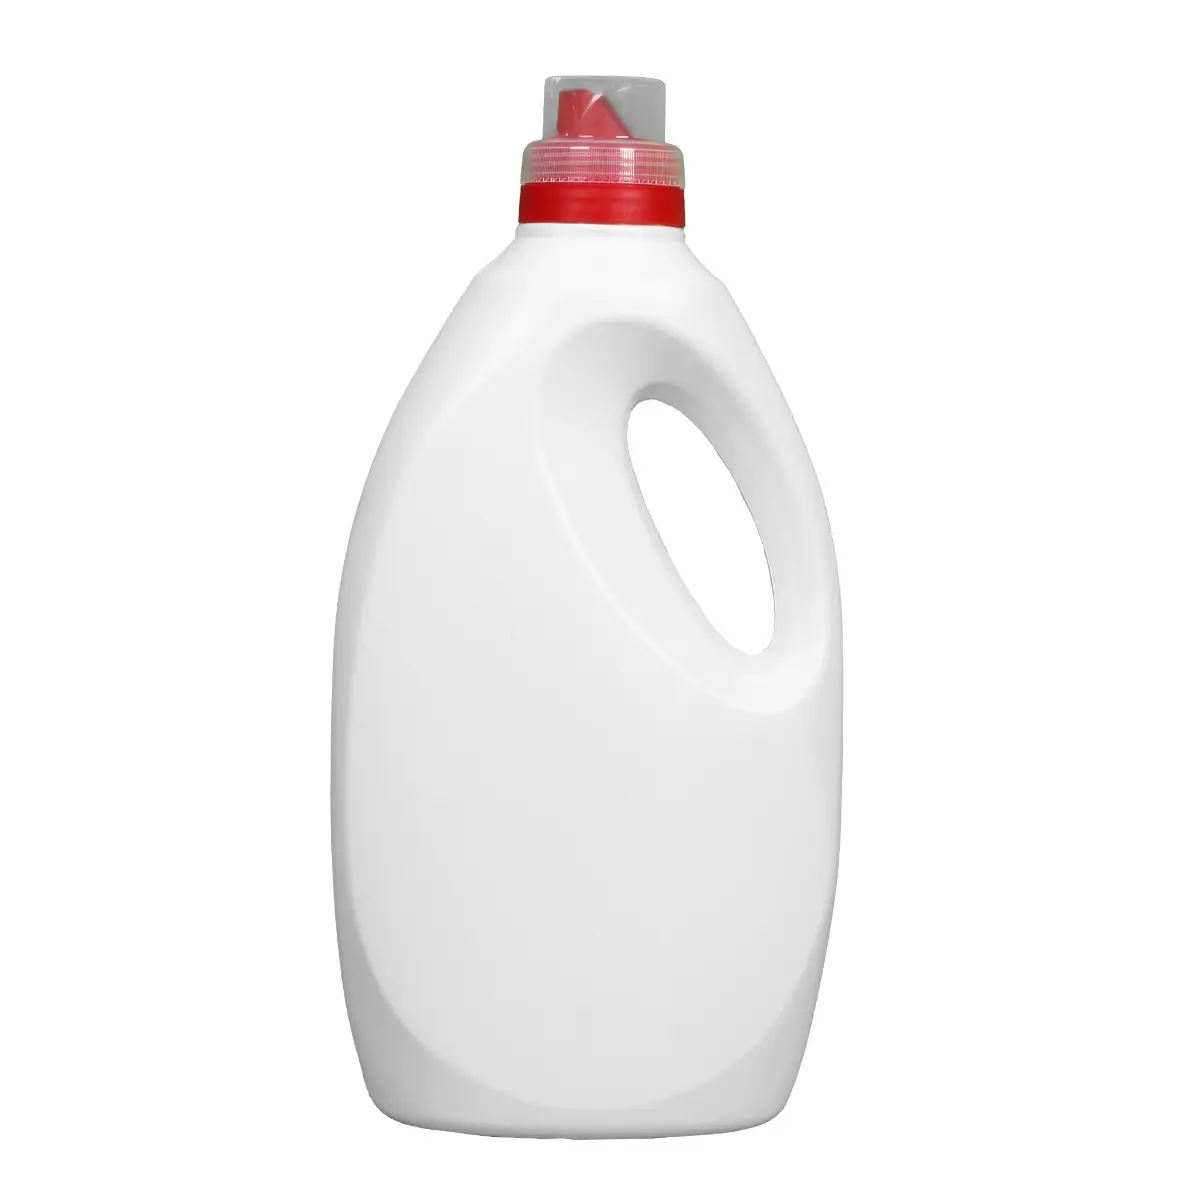 FL202 3000ML plastic bottle for liquid laundry detergent